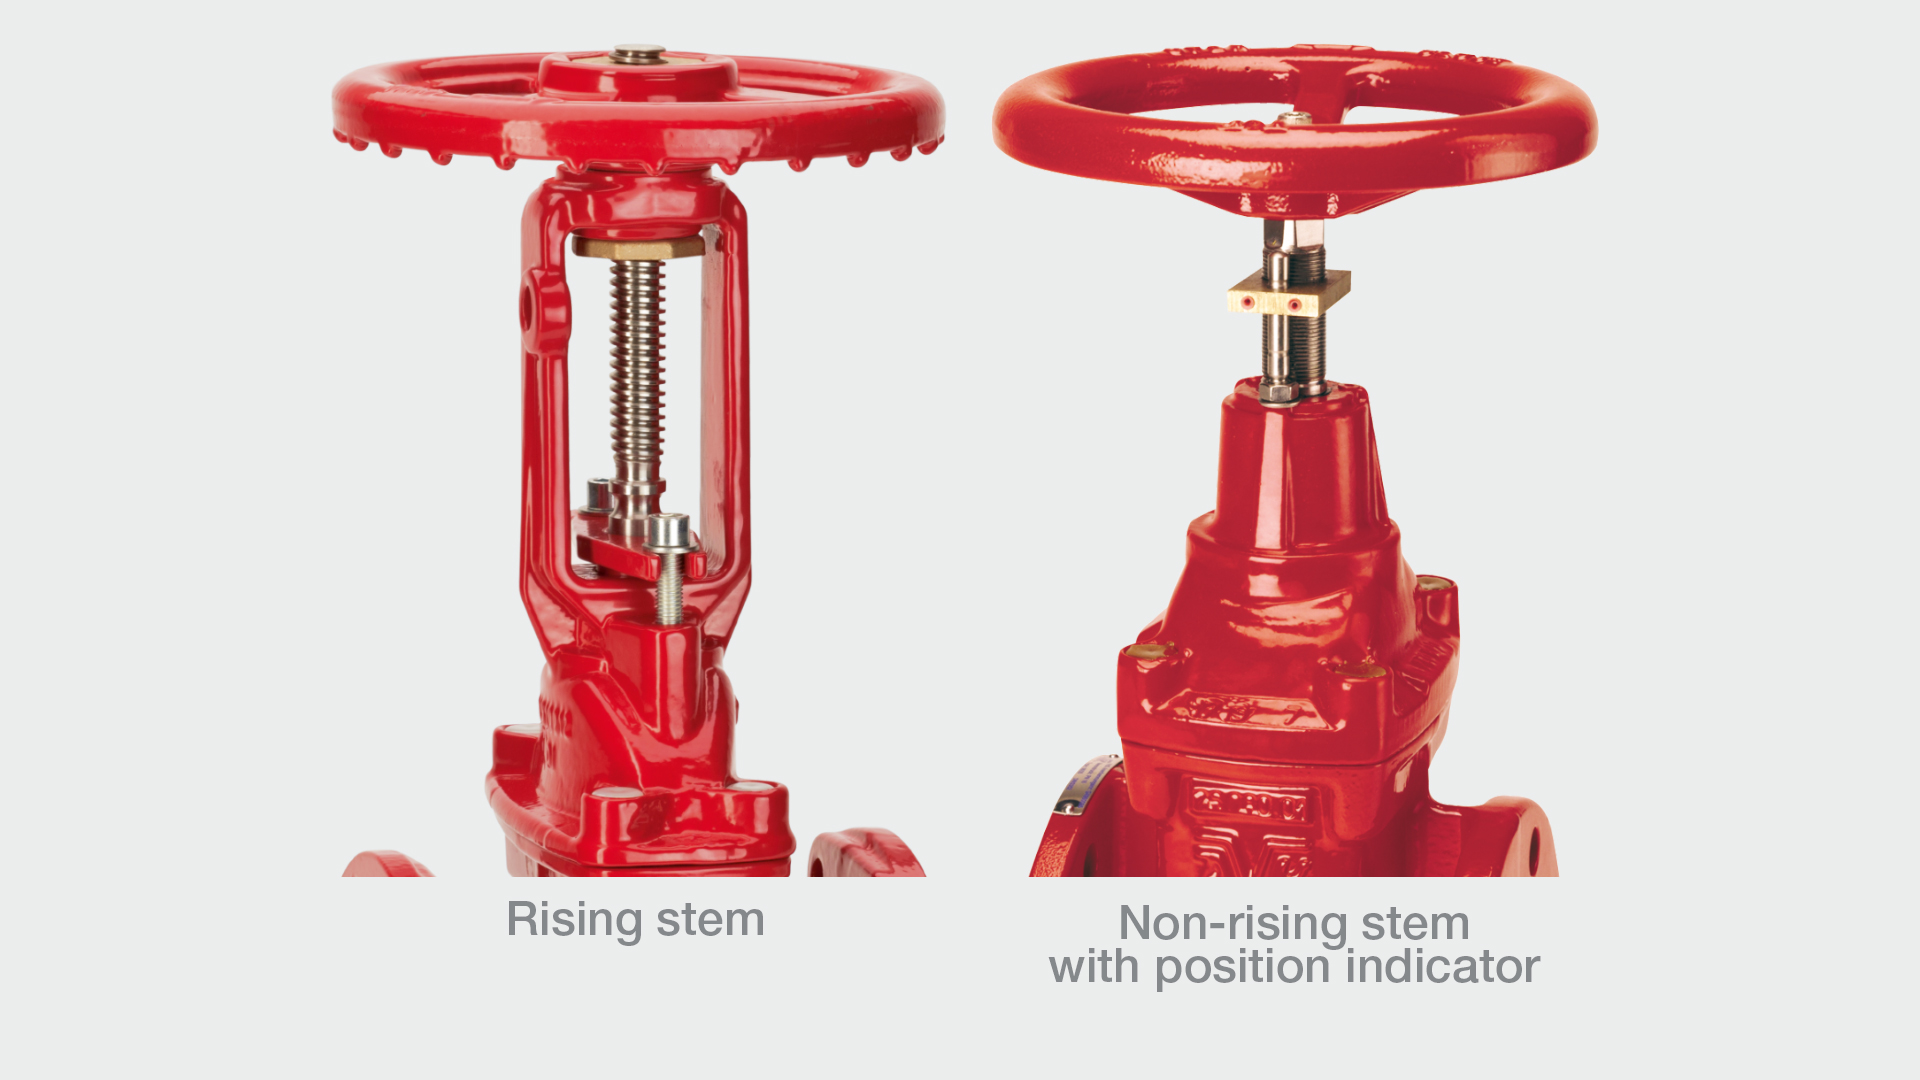 Gate valves with rising stem vs non-rising stem design